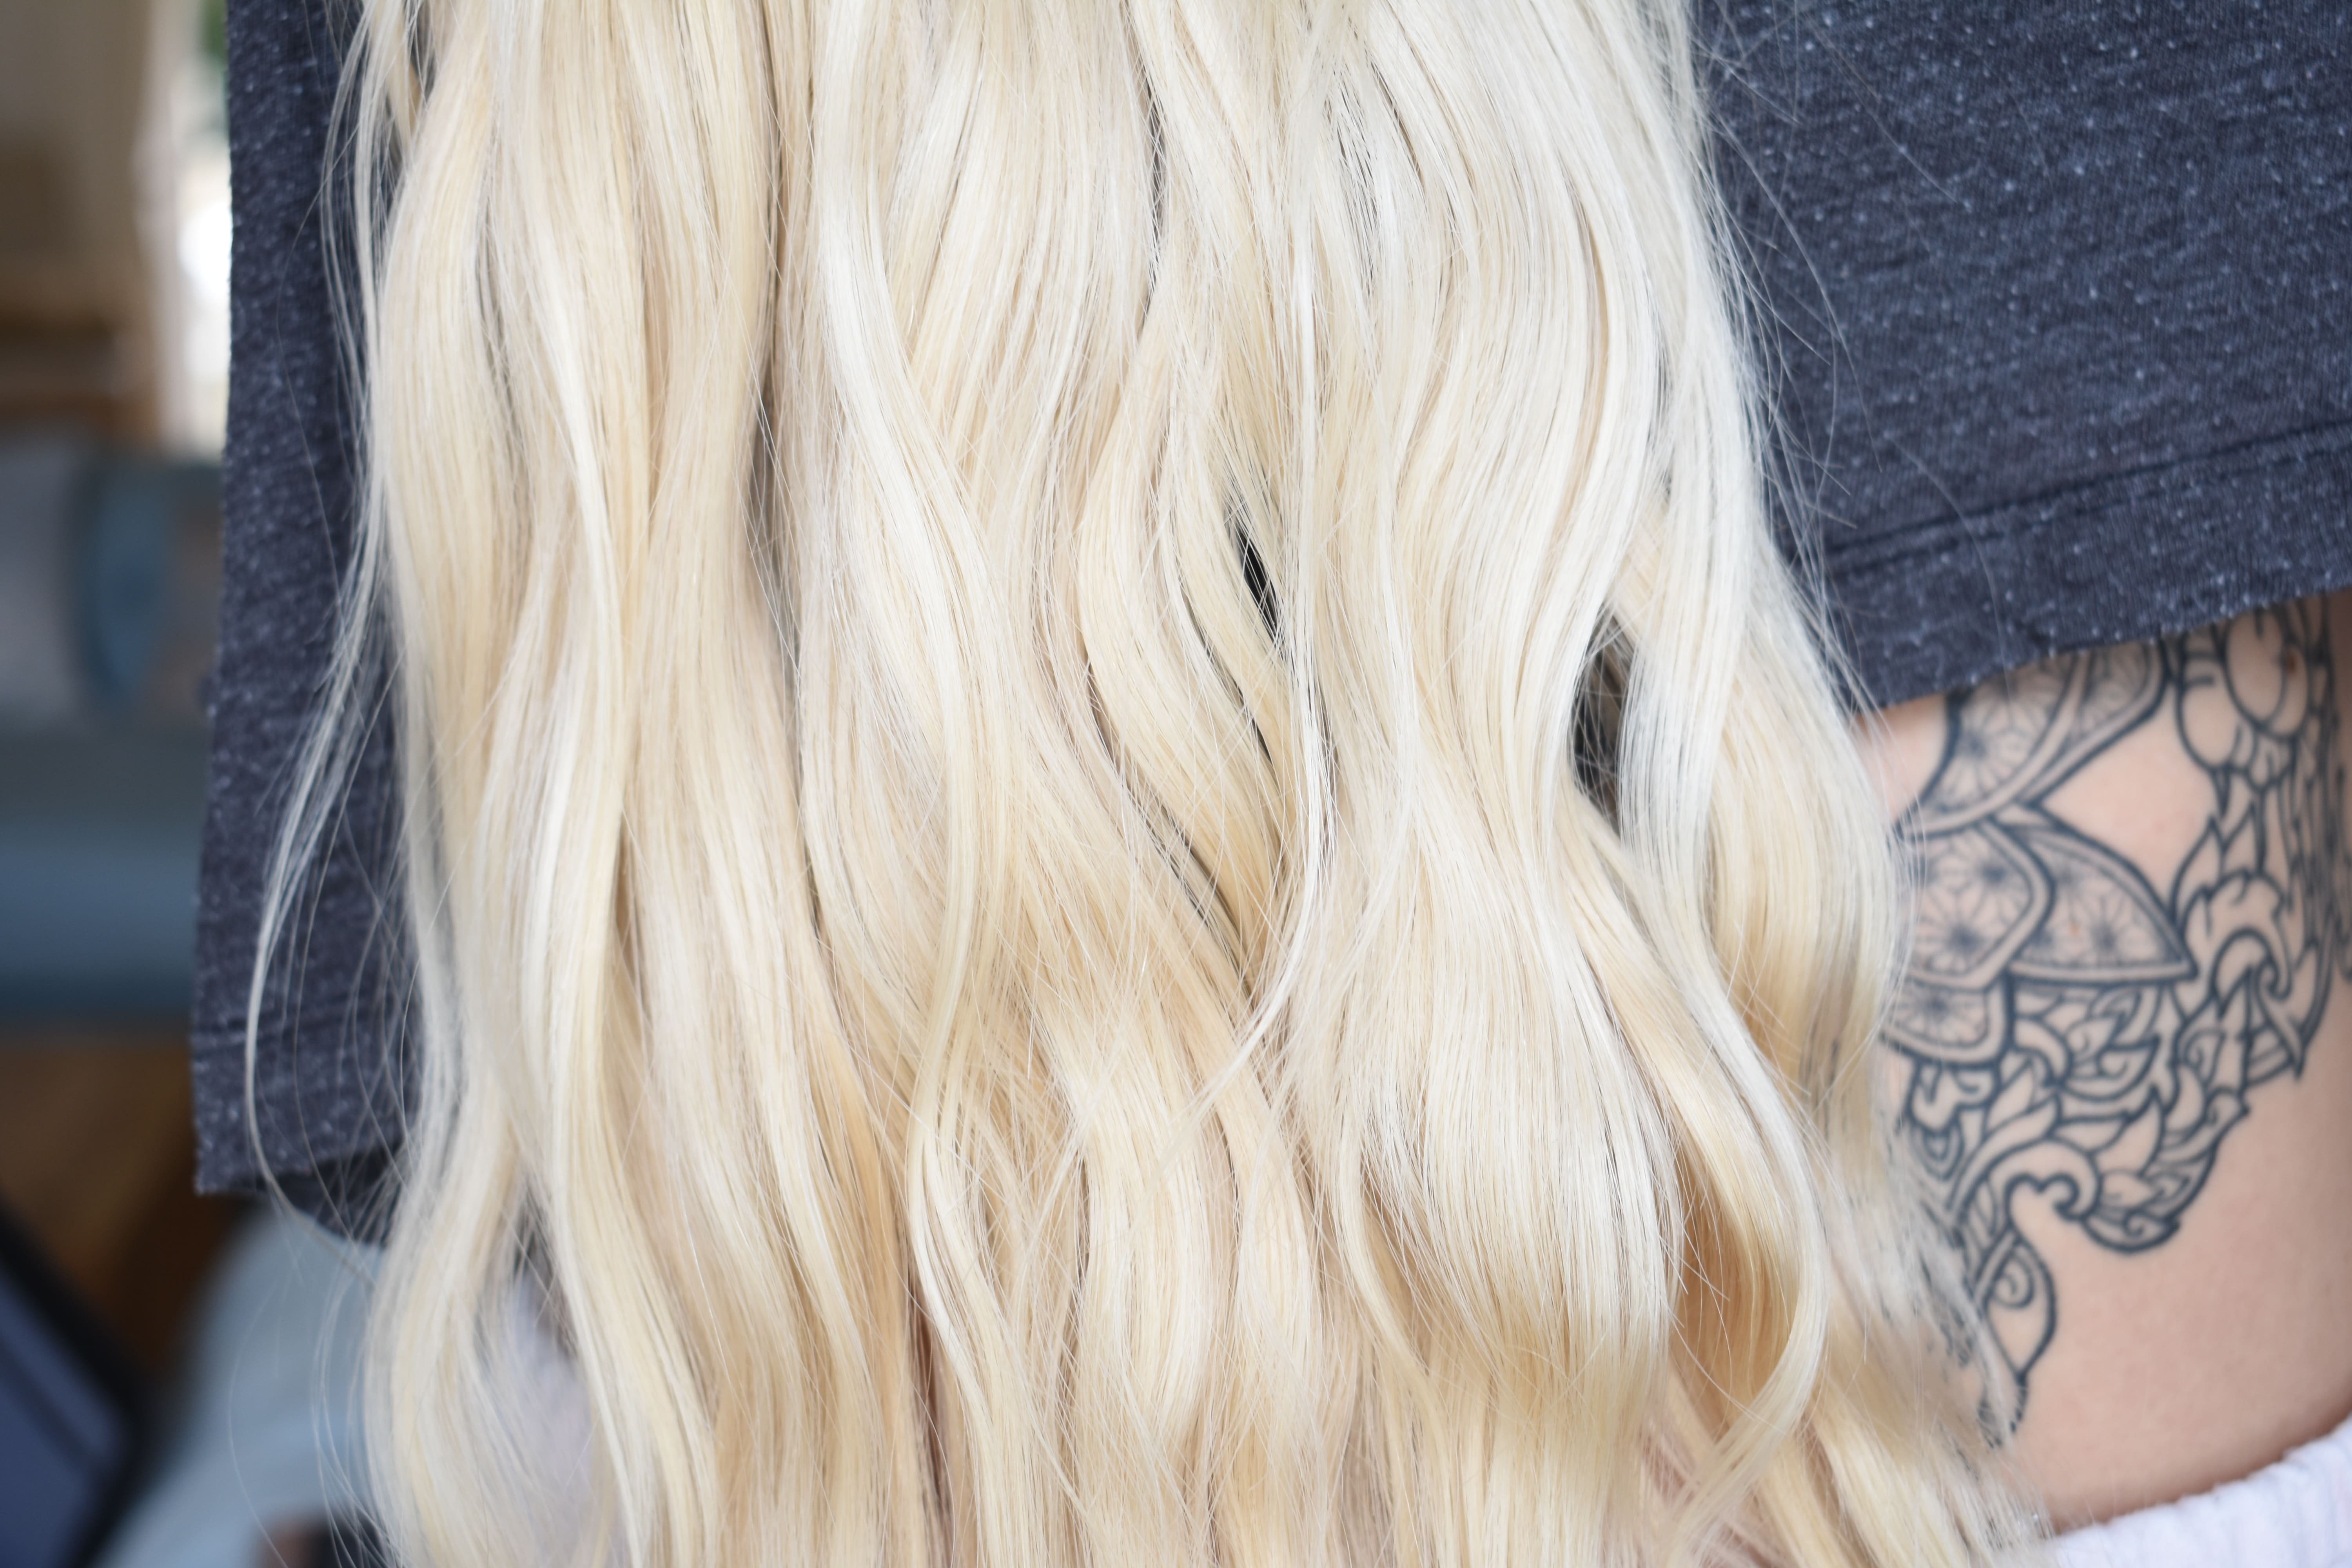 Long blonde wavy hair after using shampoo bars